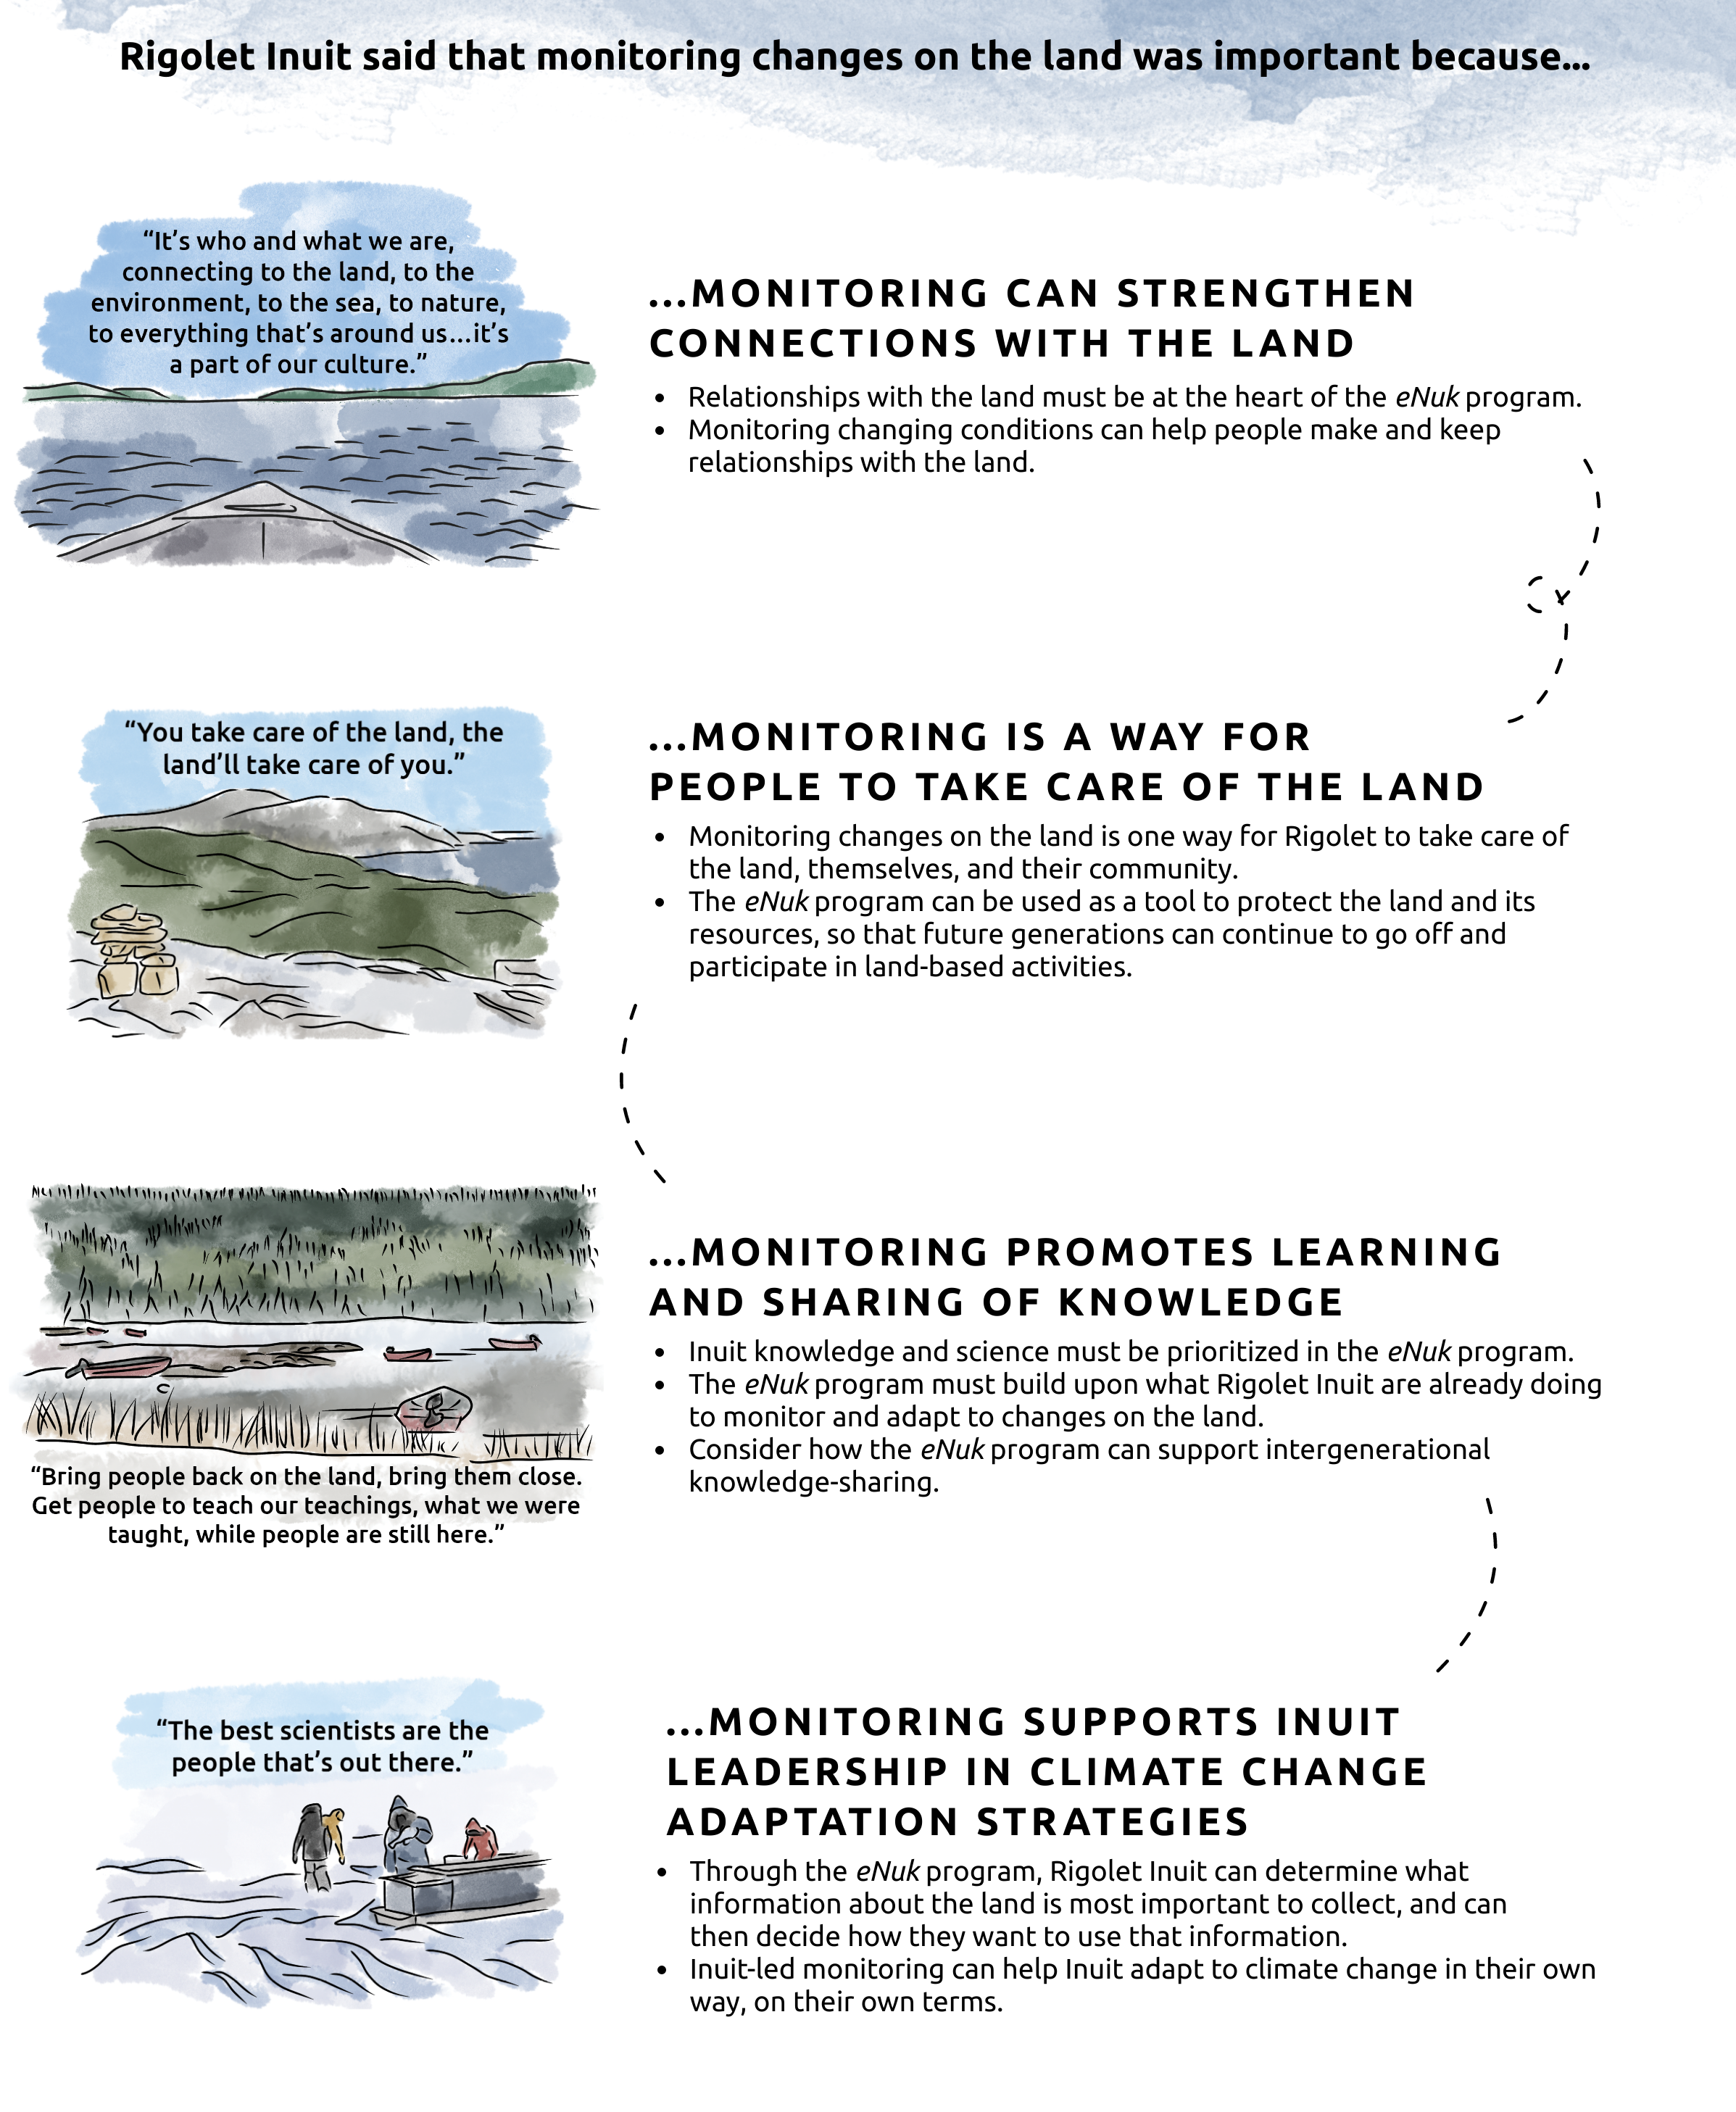 inuit-led climate change adaptation